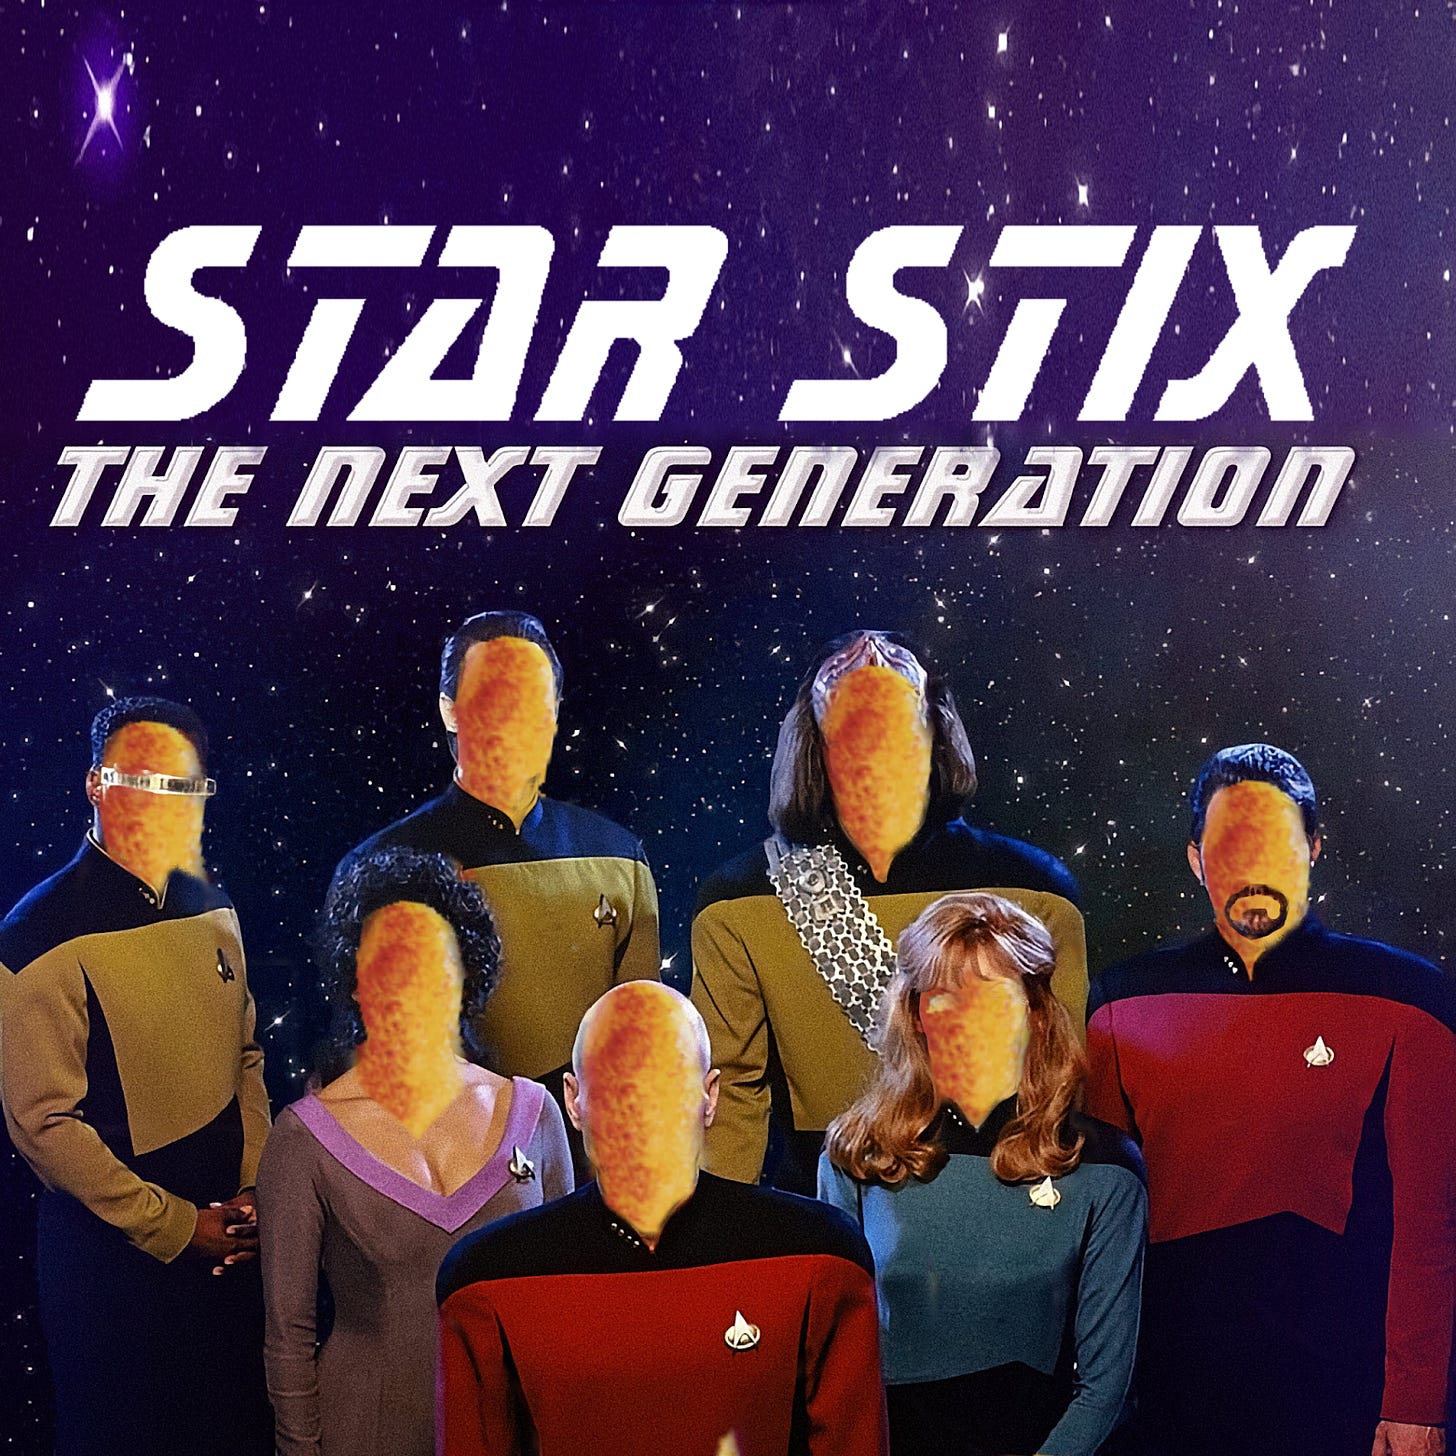 L'équipage de Star Trek : The Next Generation, mais tout le monde a été remplacé par un gnocchi